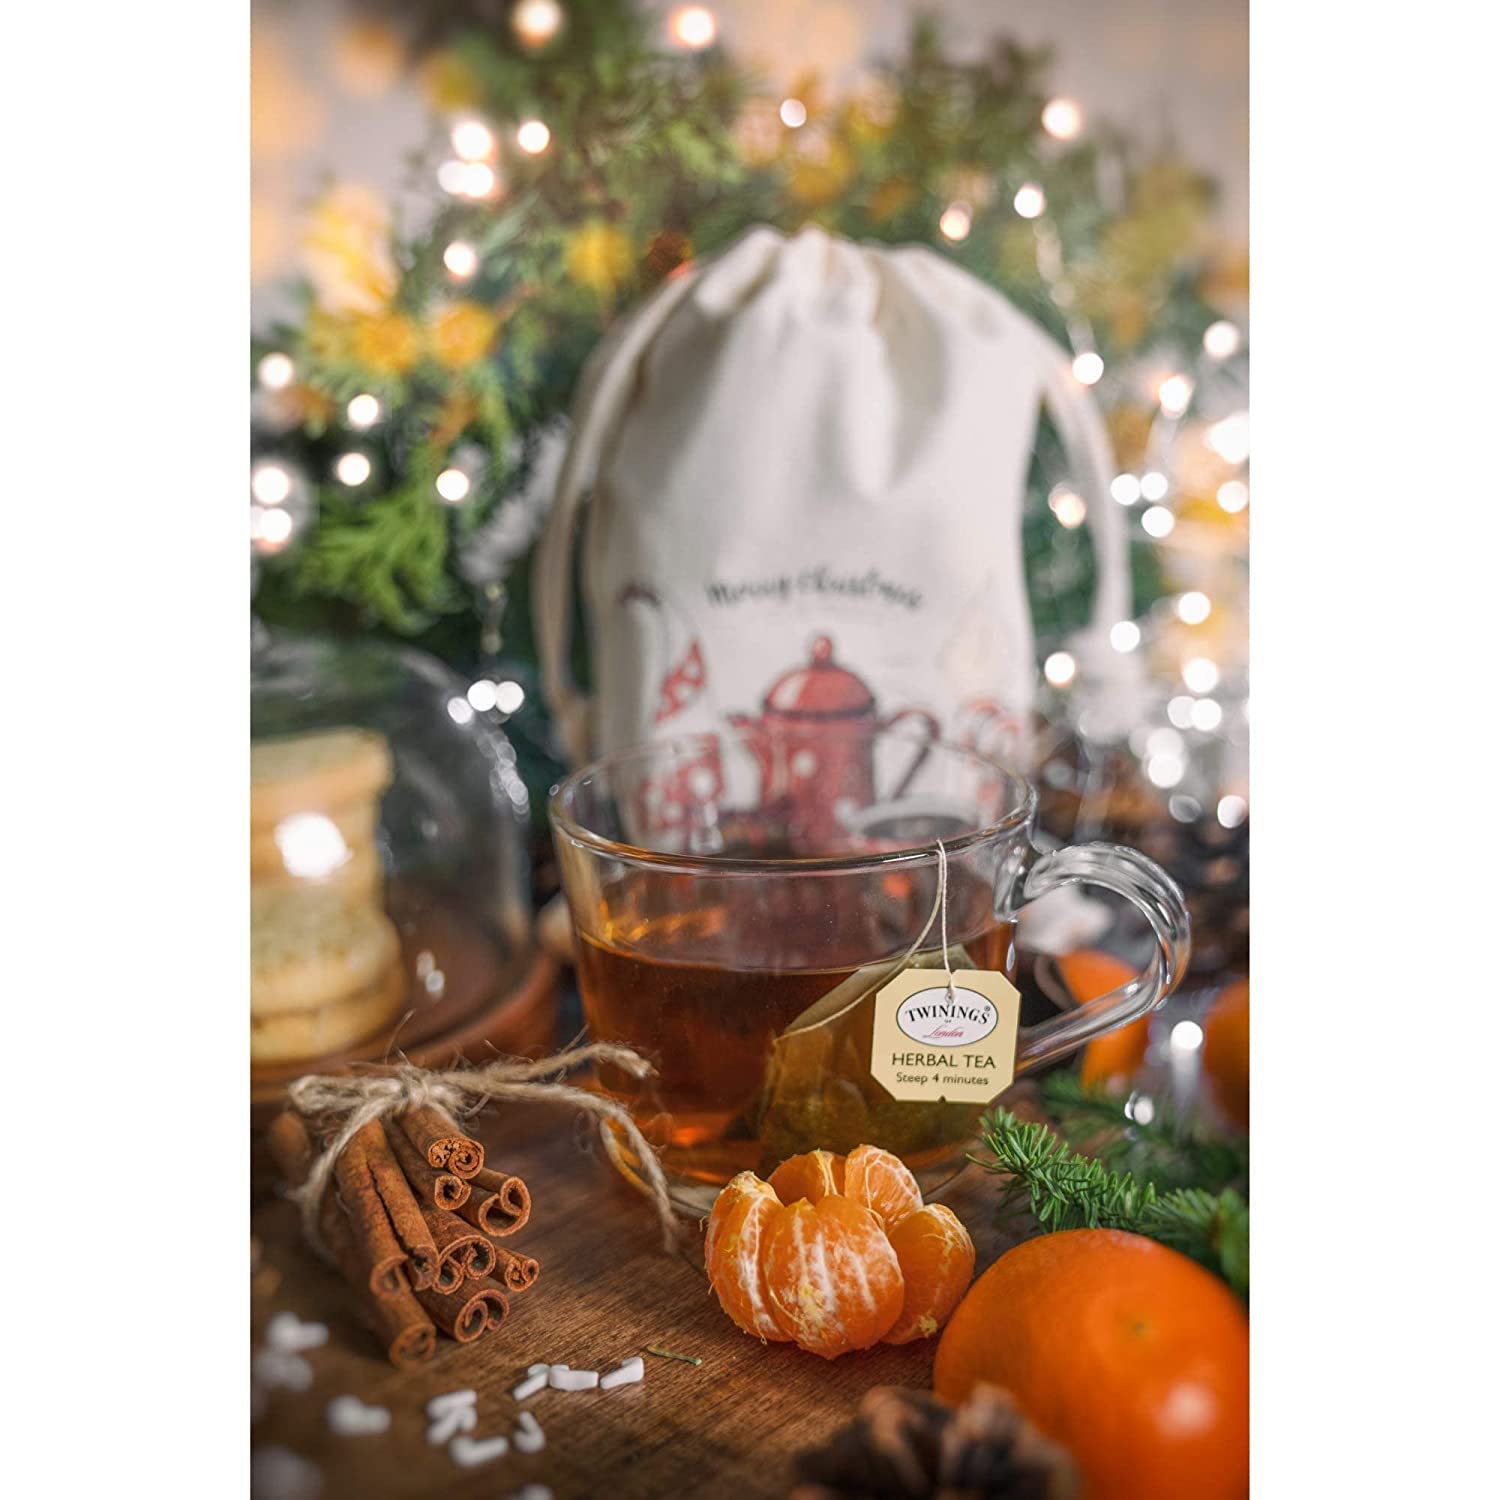 Holiday Tea Bag Sampler Gift Set - Christmas Seasonal Variety Collection - 45 count, 15 flavors